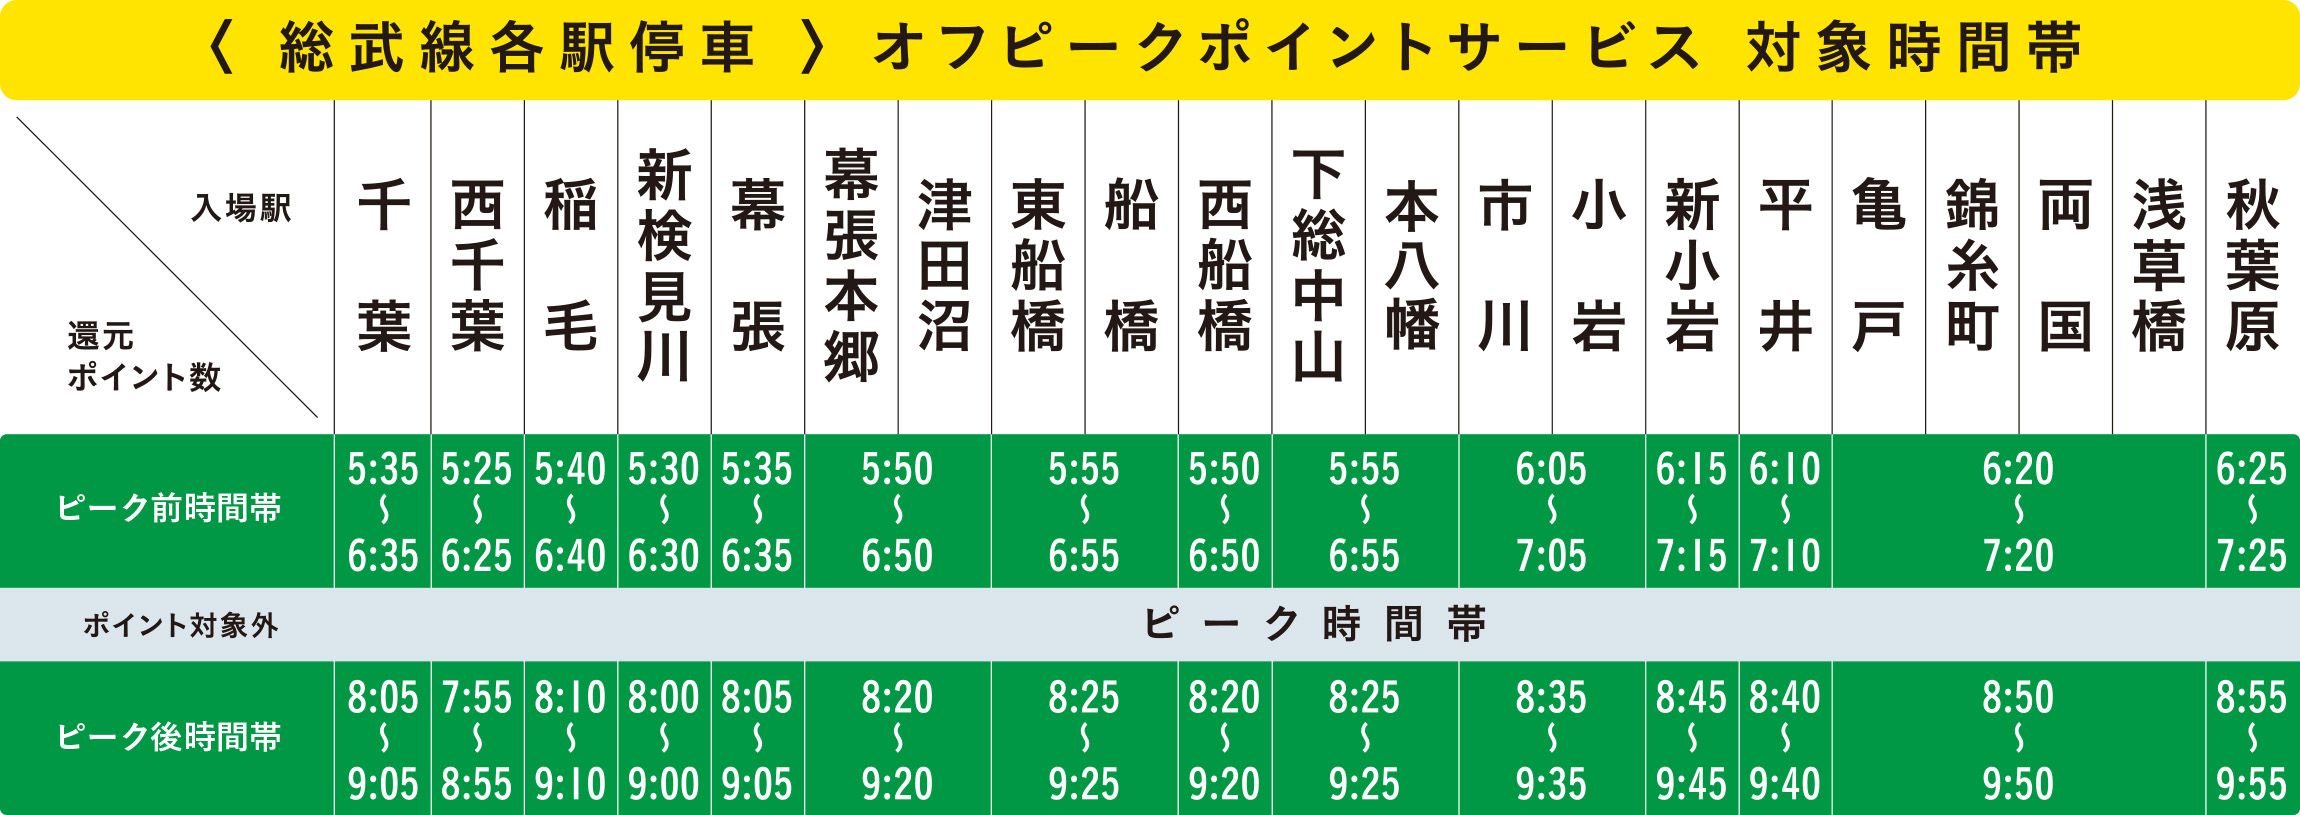 総武線各駅停車オフピークポイントサービス対象時間帯